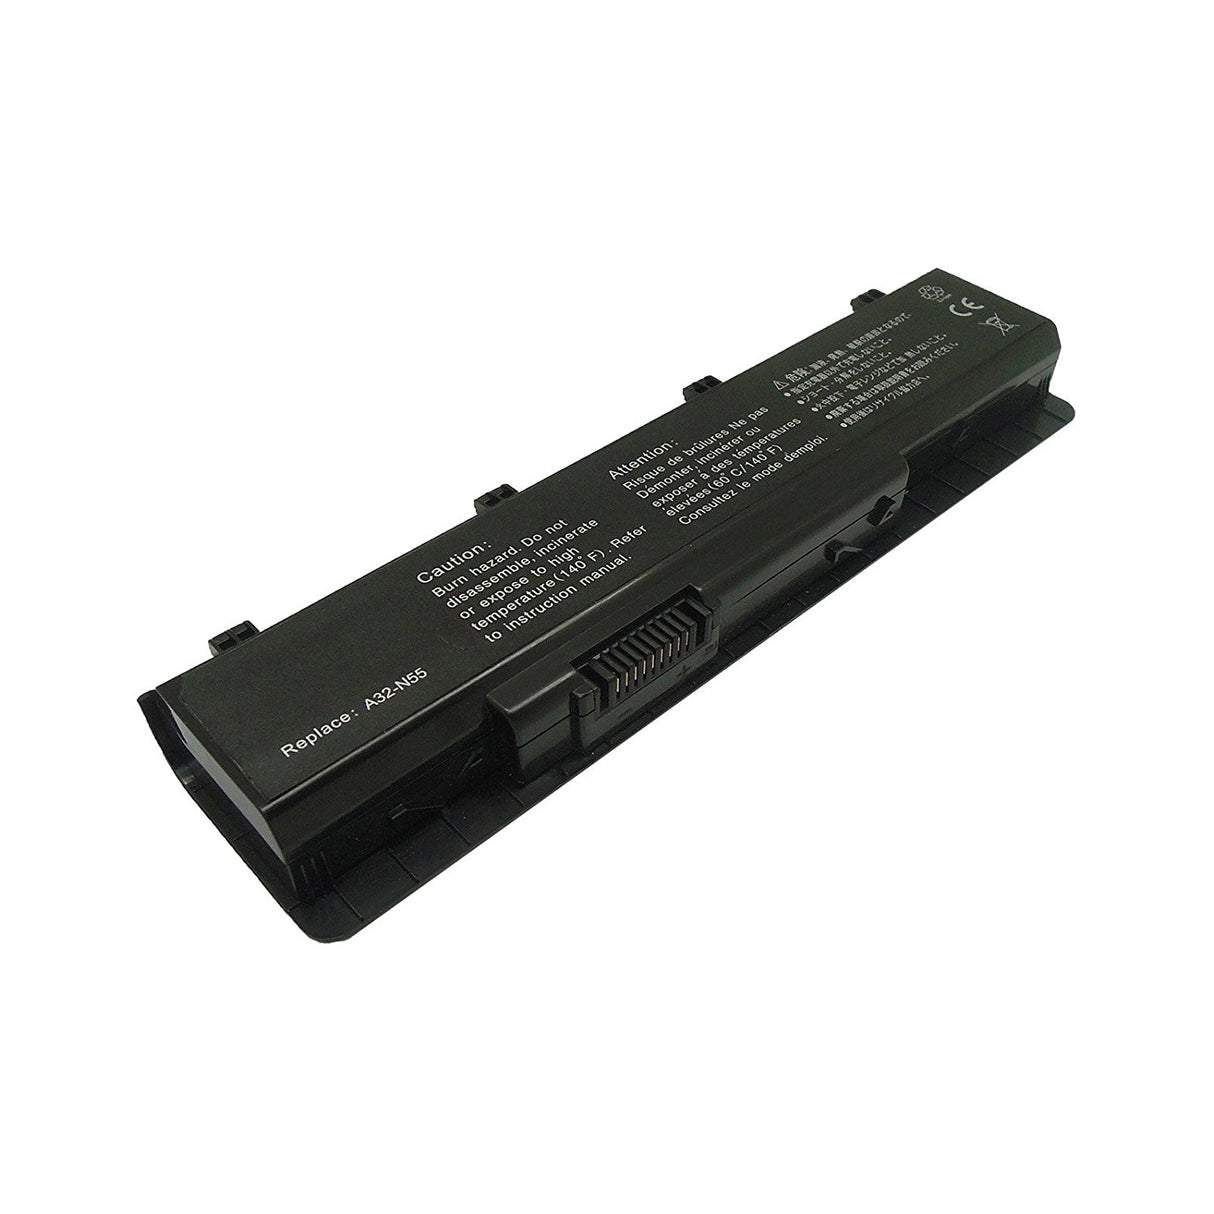 Bateria Compatível para Asus A32-N55 N45 N75 Series 5200mAh - Multi4you®